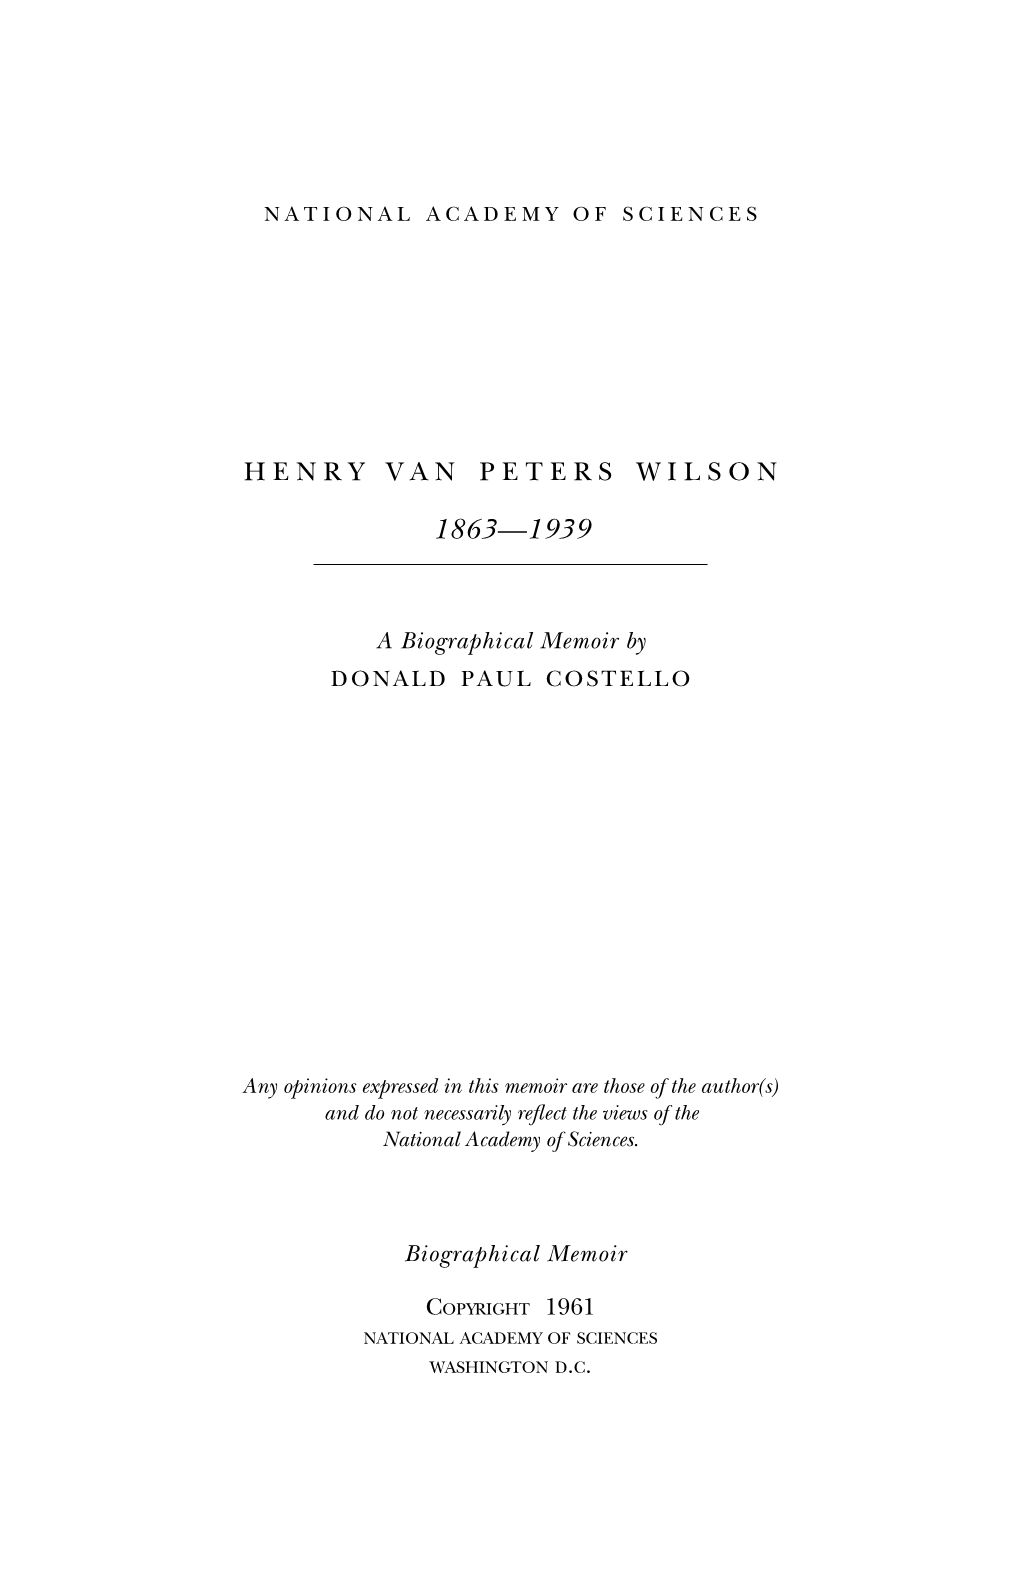 Henry Van Peters Wilson